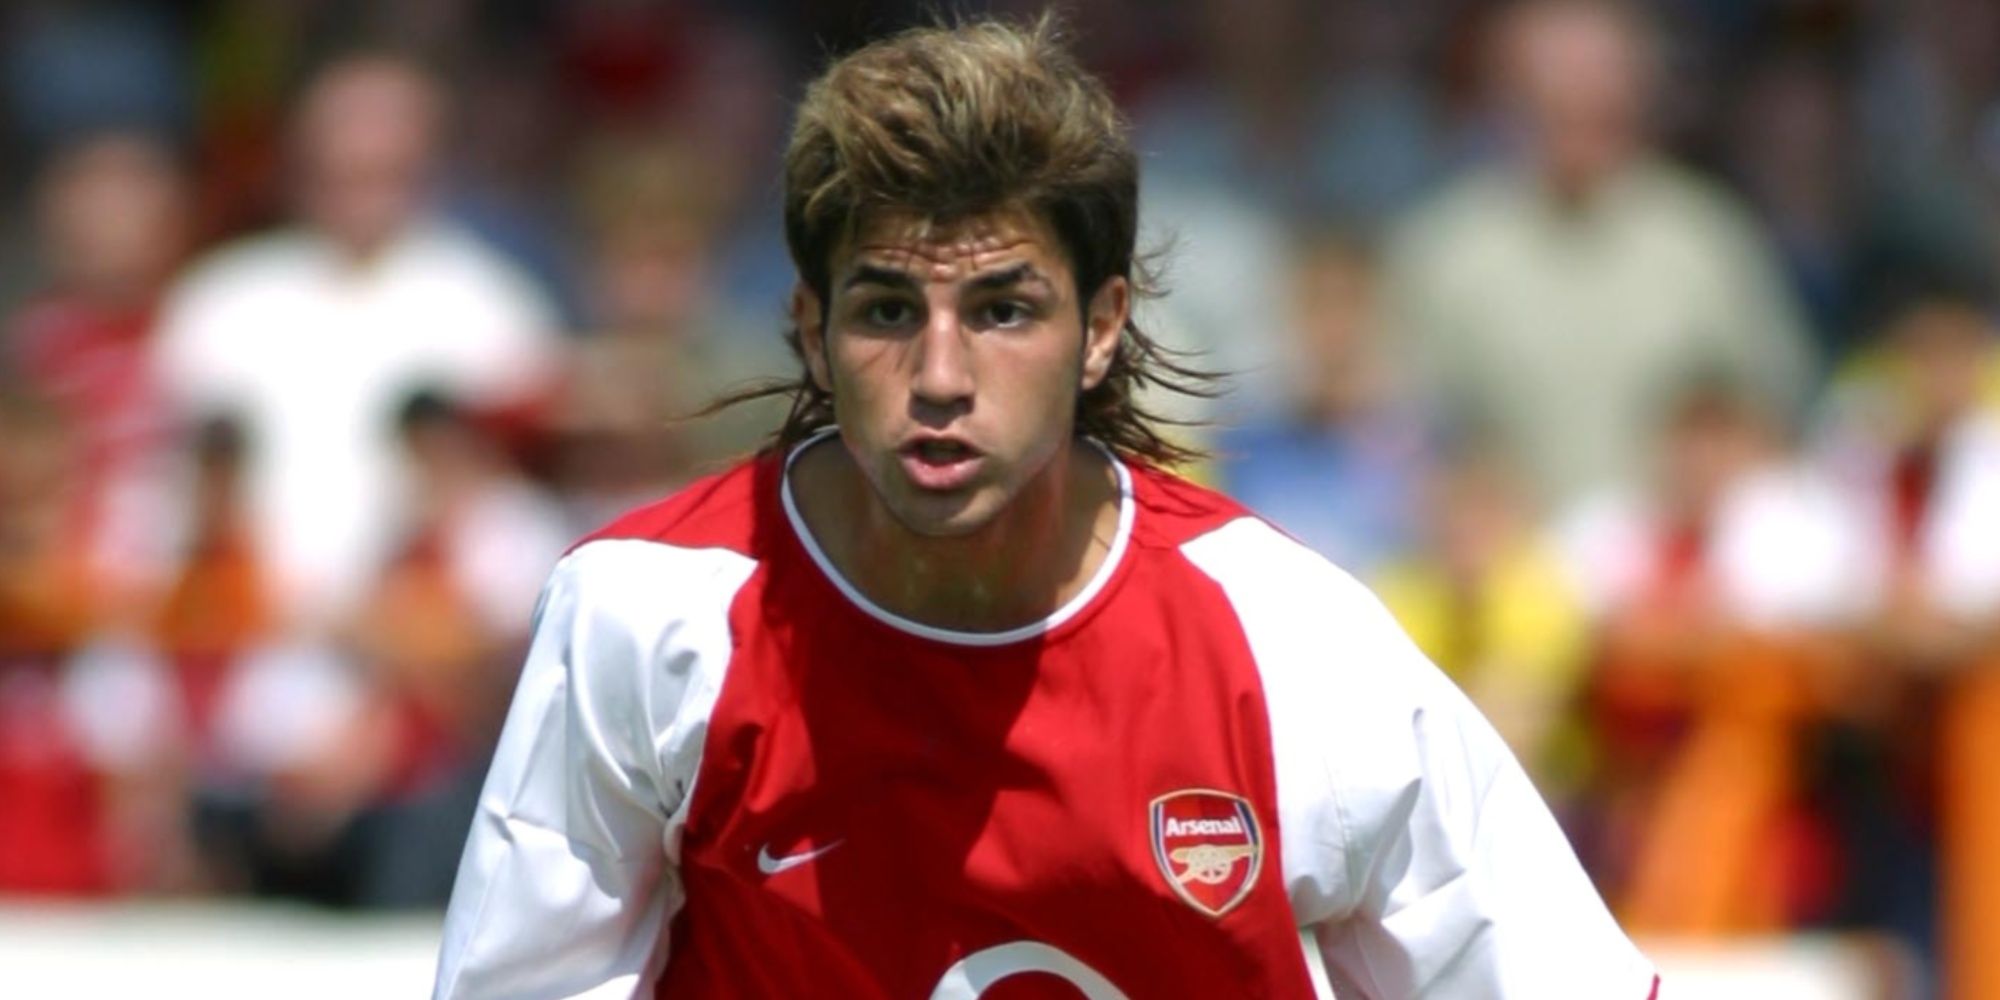 A young Cesc Fabregas of Arsenal